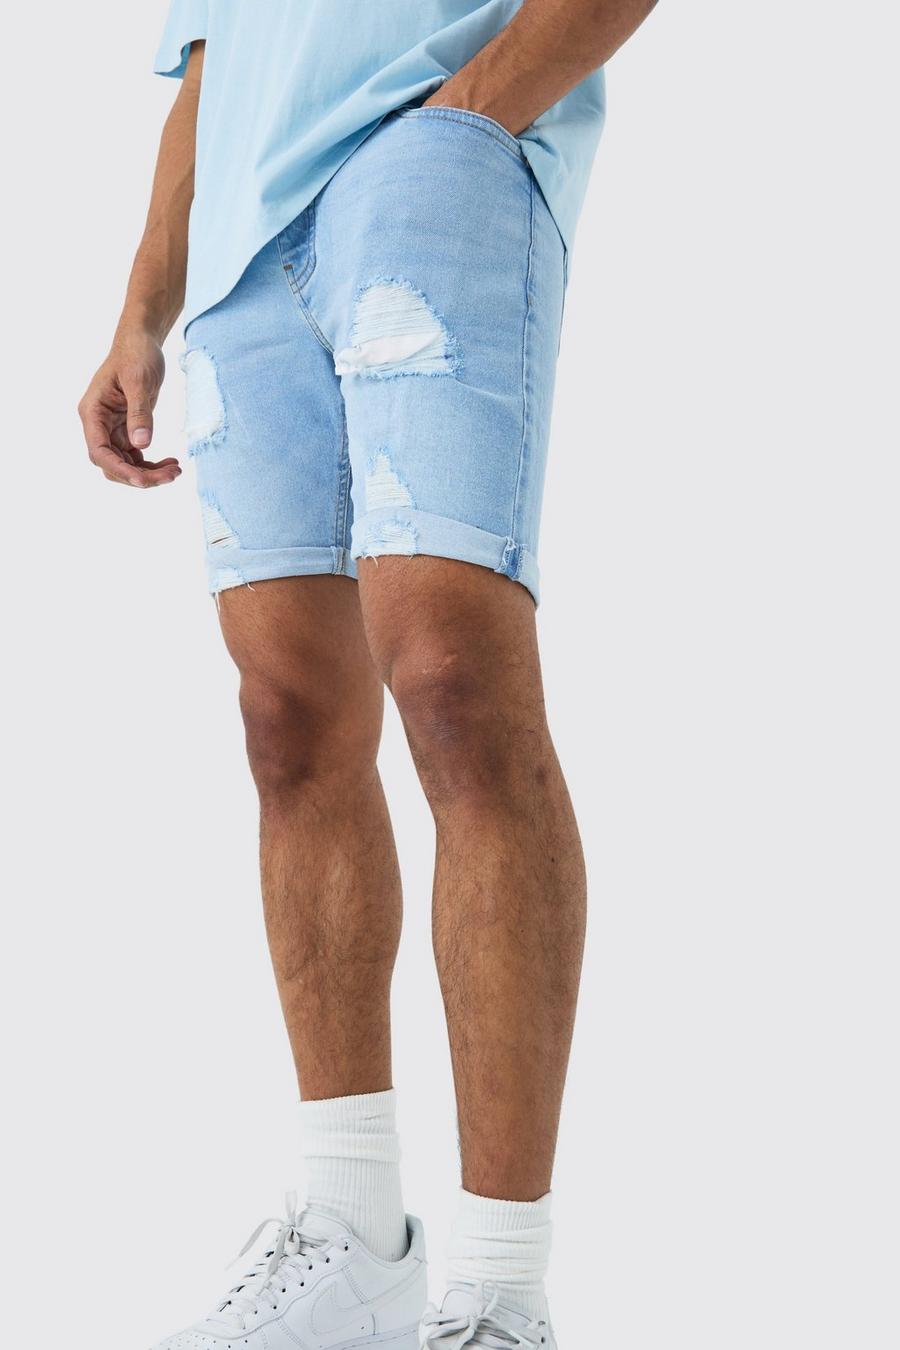 Pantaloncini in denim Stretch Skinny Fit effetto smagliato in azzurro, Light blue